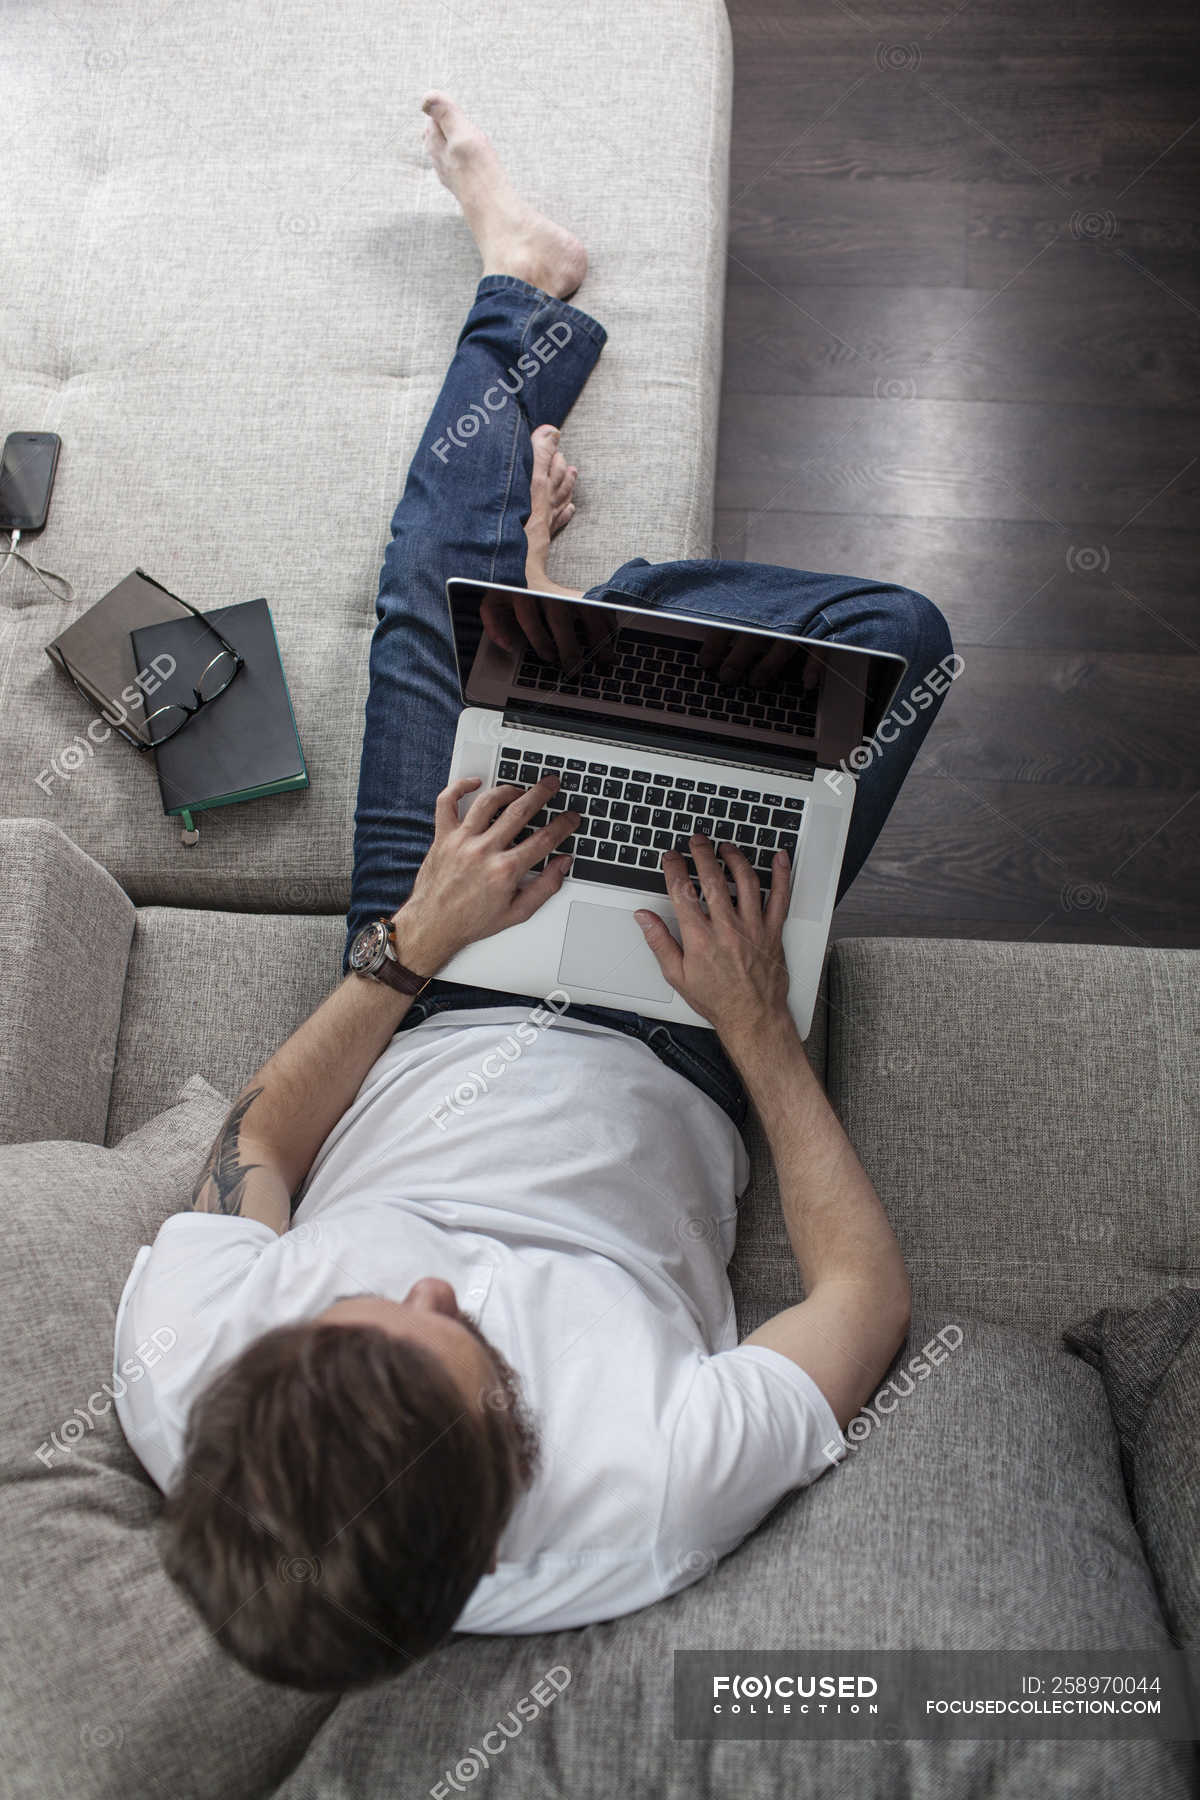 Мужчина сидит дома на диване и пользуется ноутбуком, вид сверху —мобильность, люди - Stock Photo